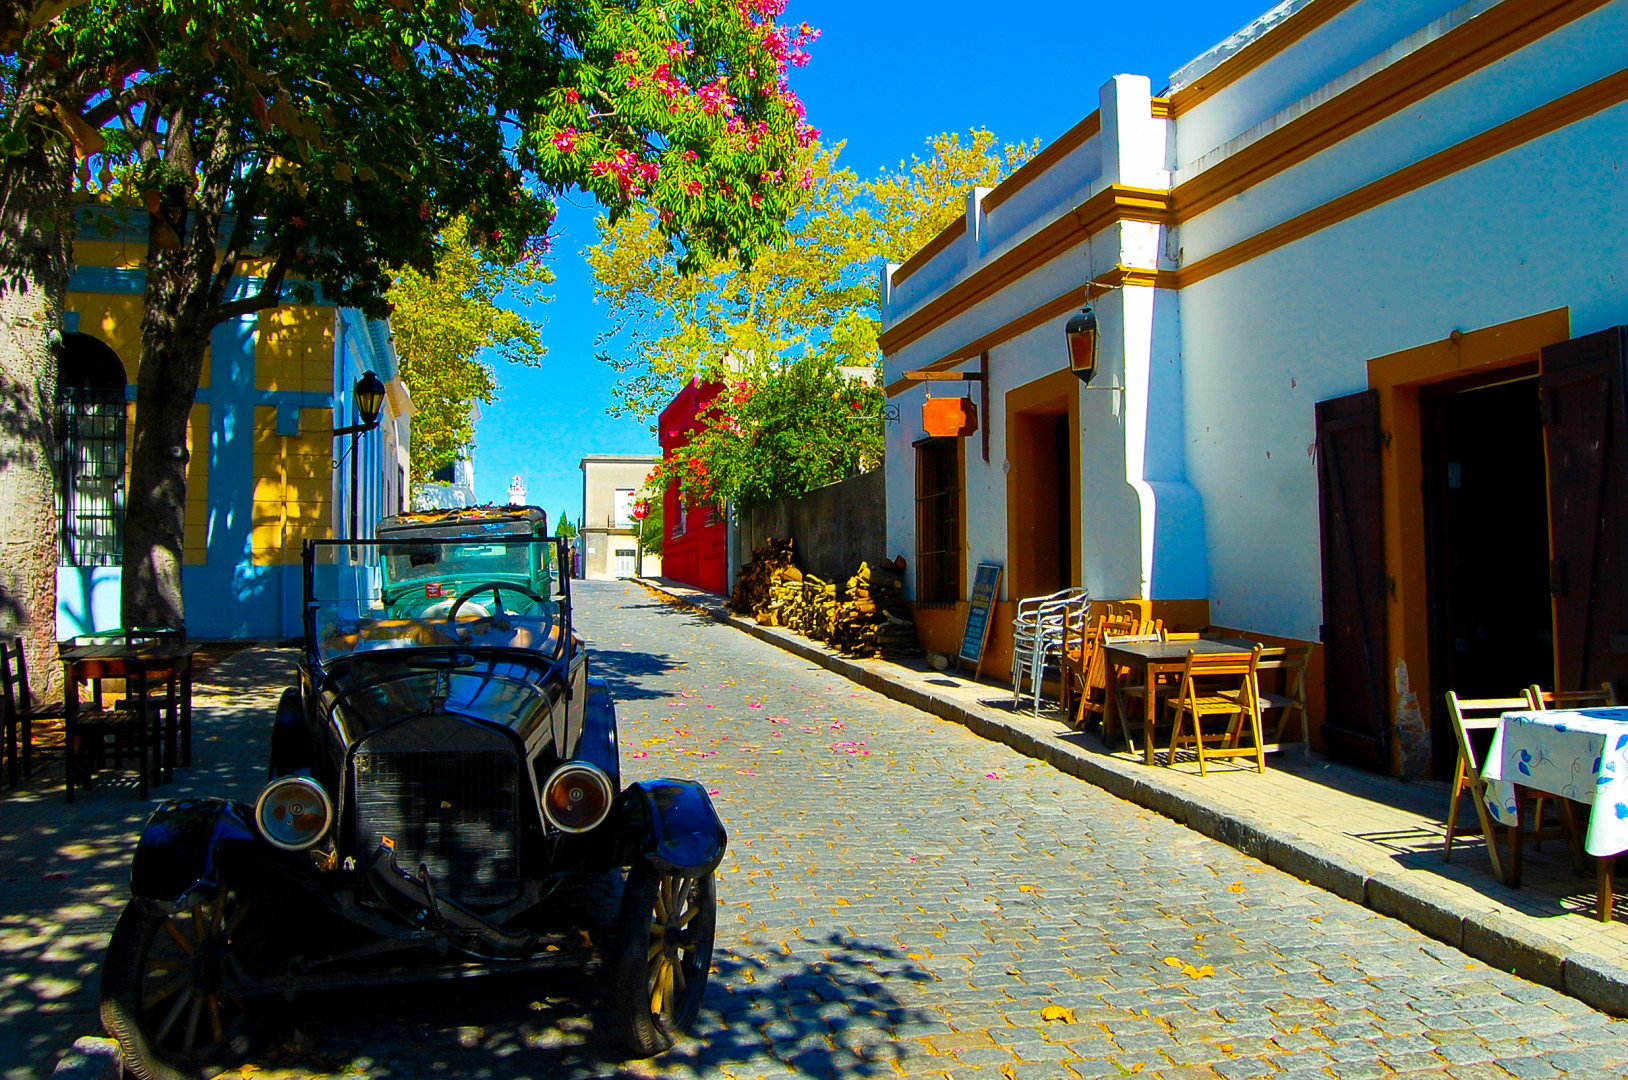 Uruguay__World Heritage Site Historic Quarter of the City of Colonia del Sacramento